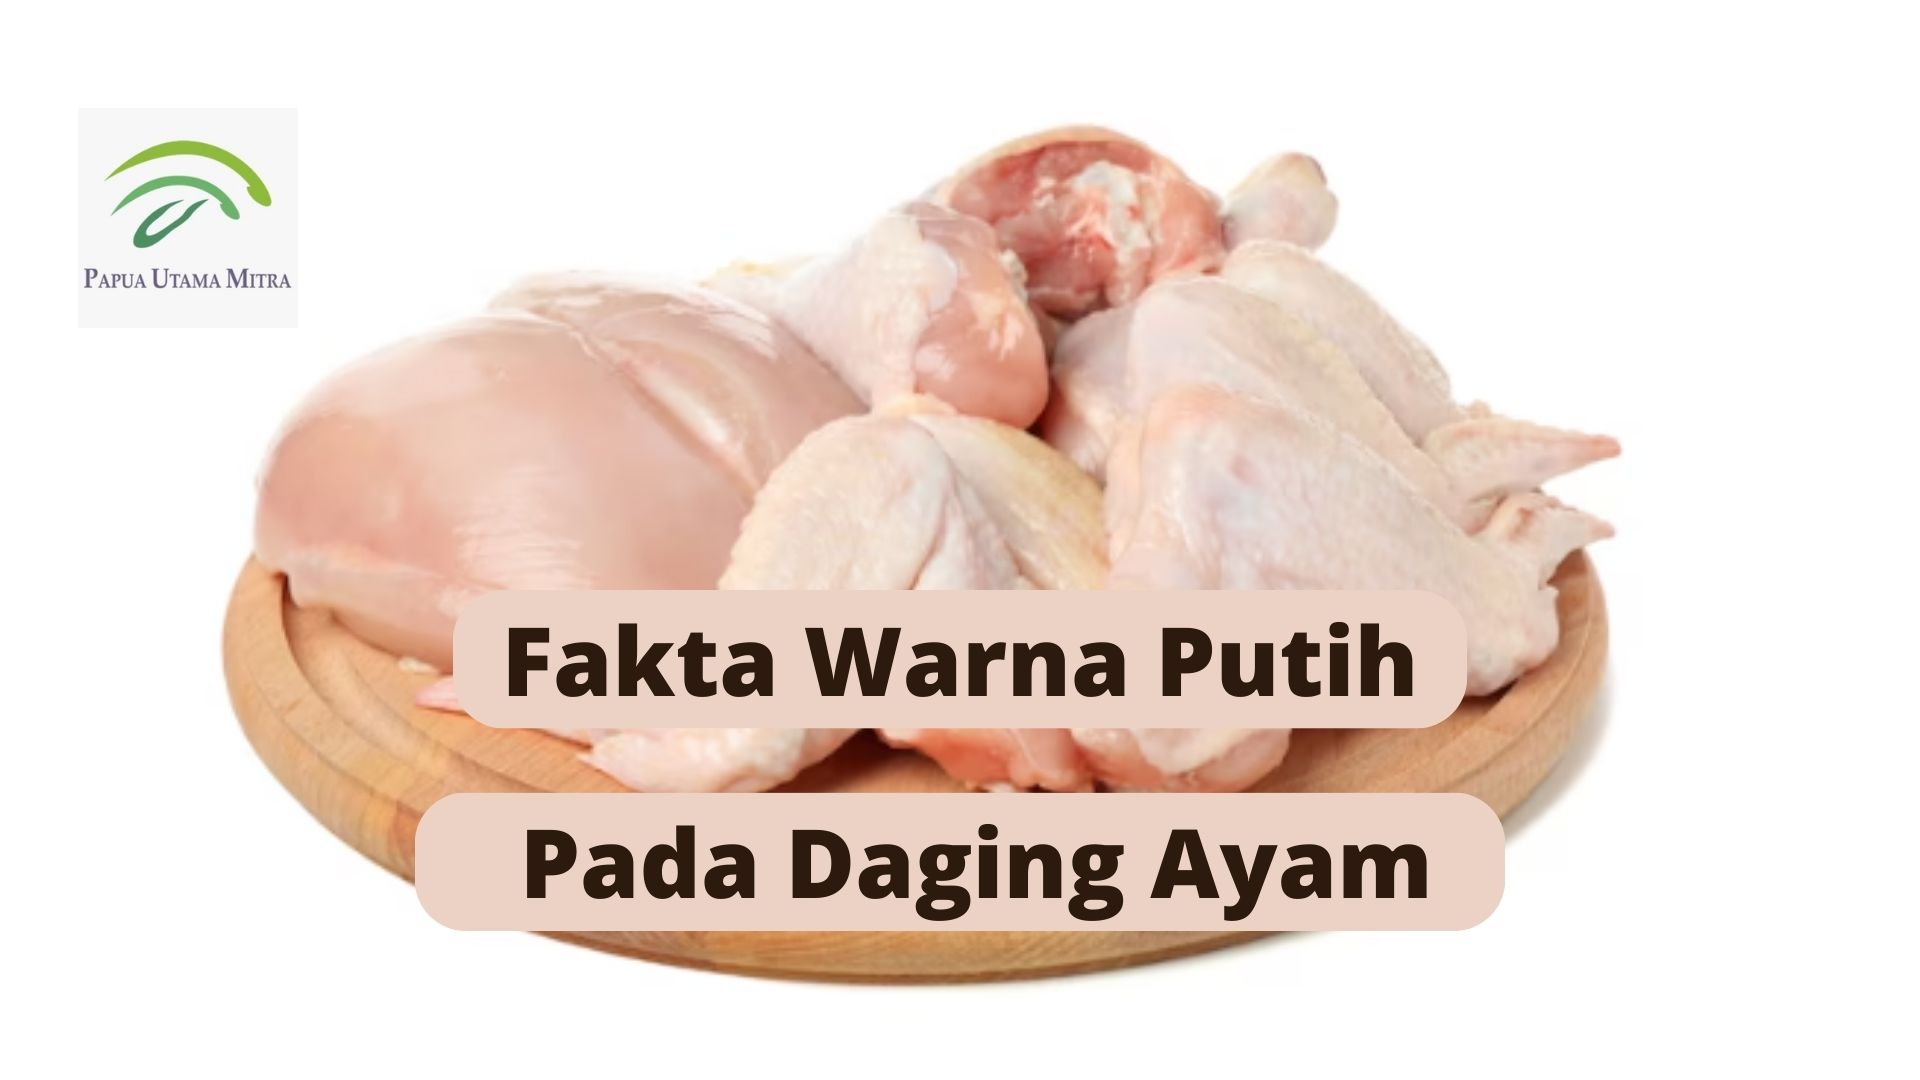 Fakta Warna Putih Pada Daging Ayam